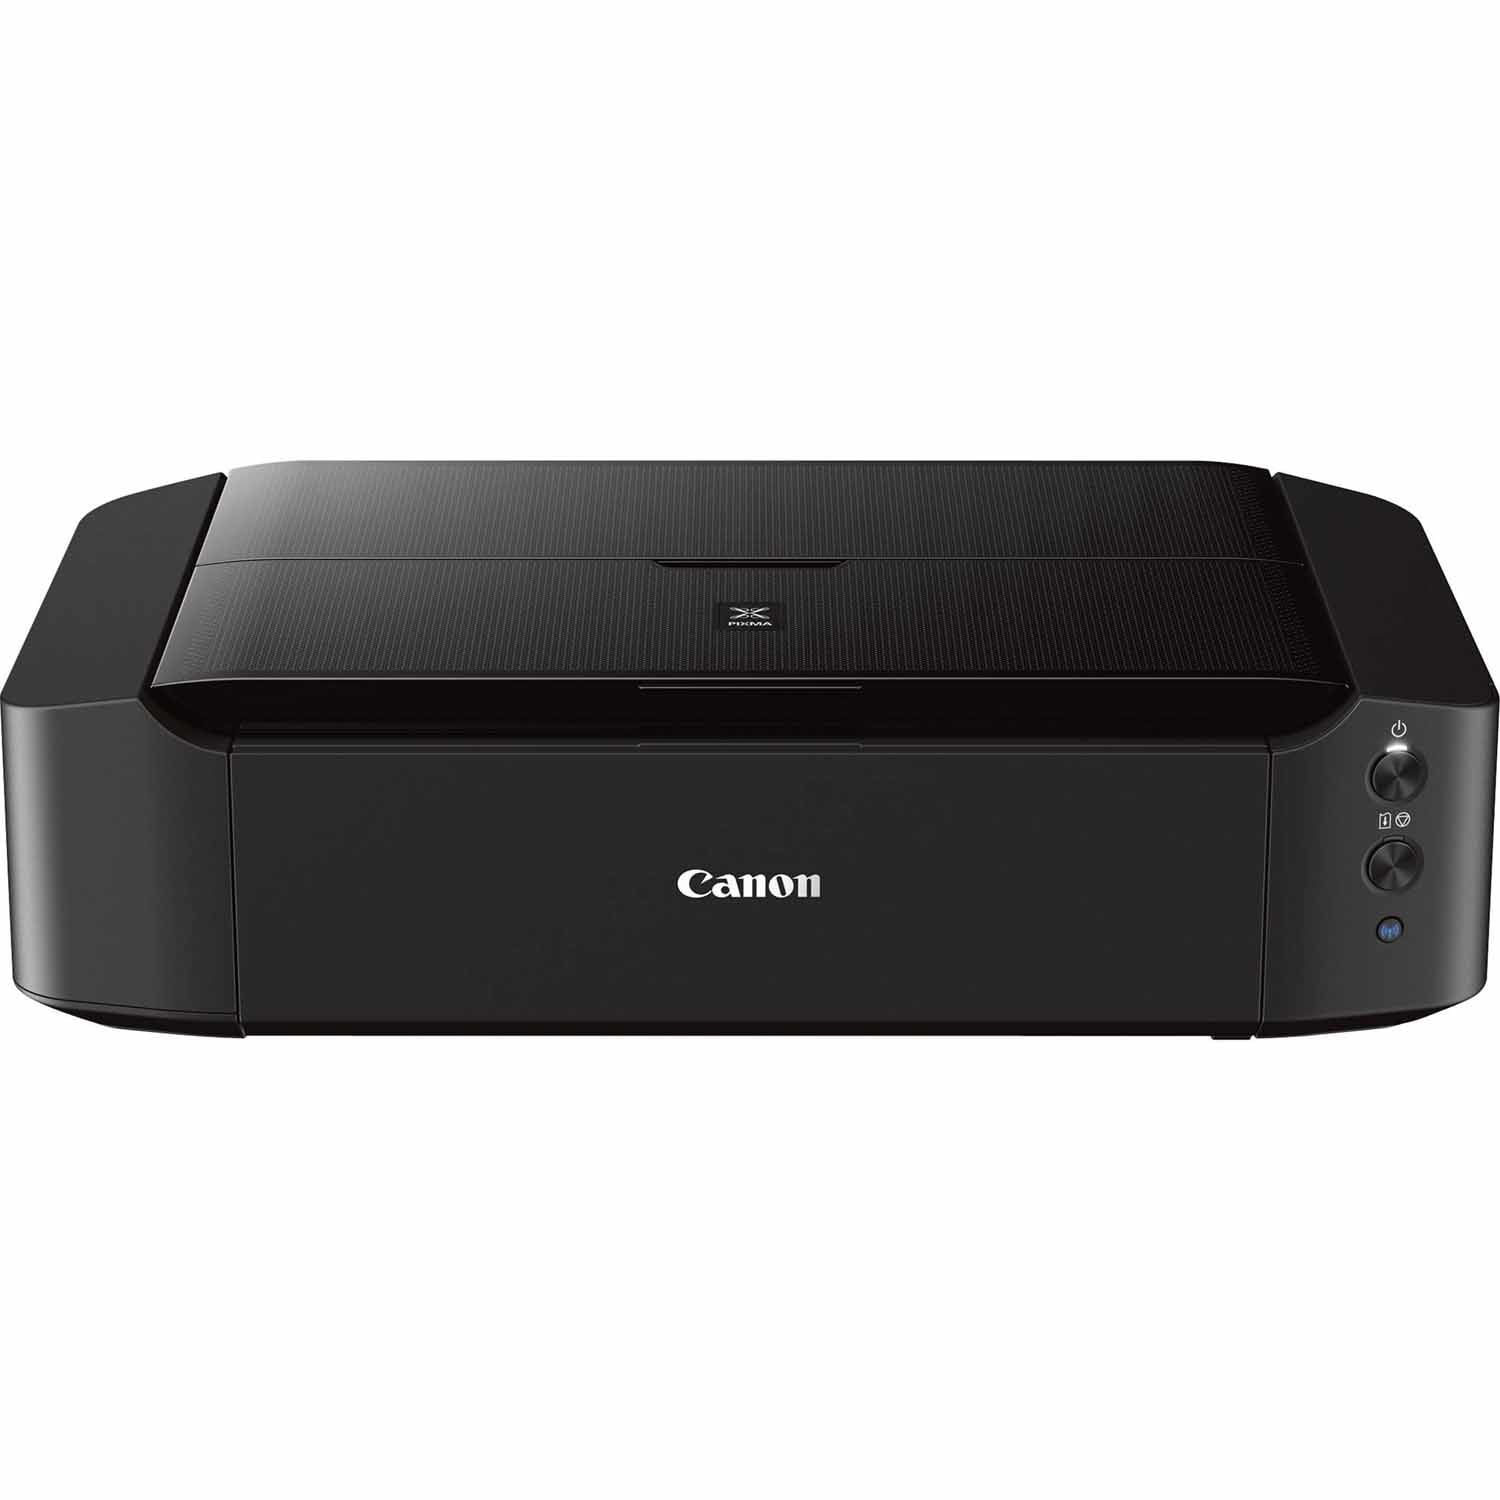 Canon Pixma iP8720 Wireless Desktop Inkjet Printer - Black